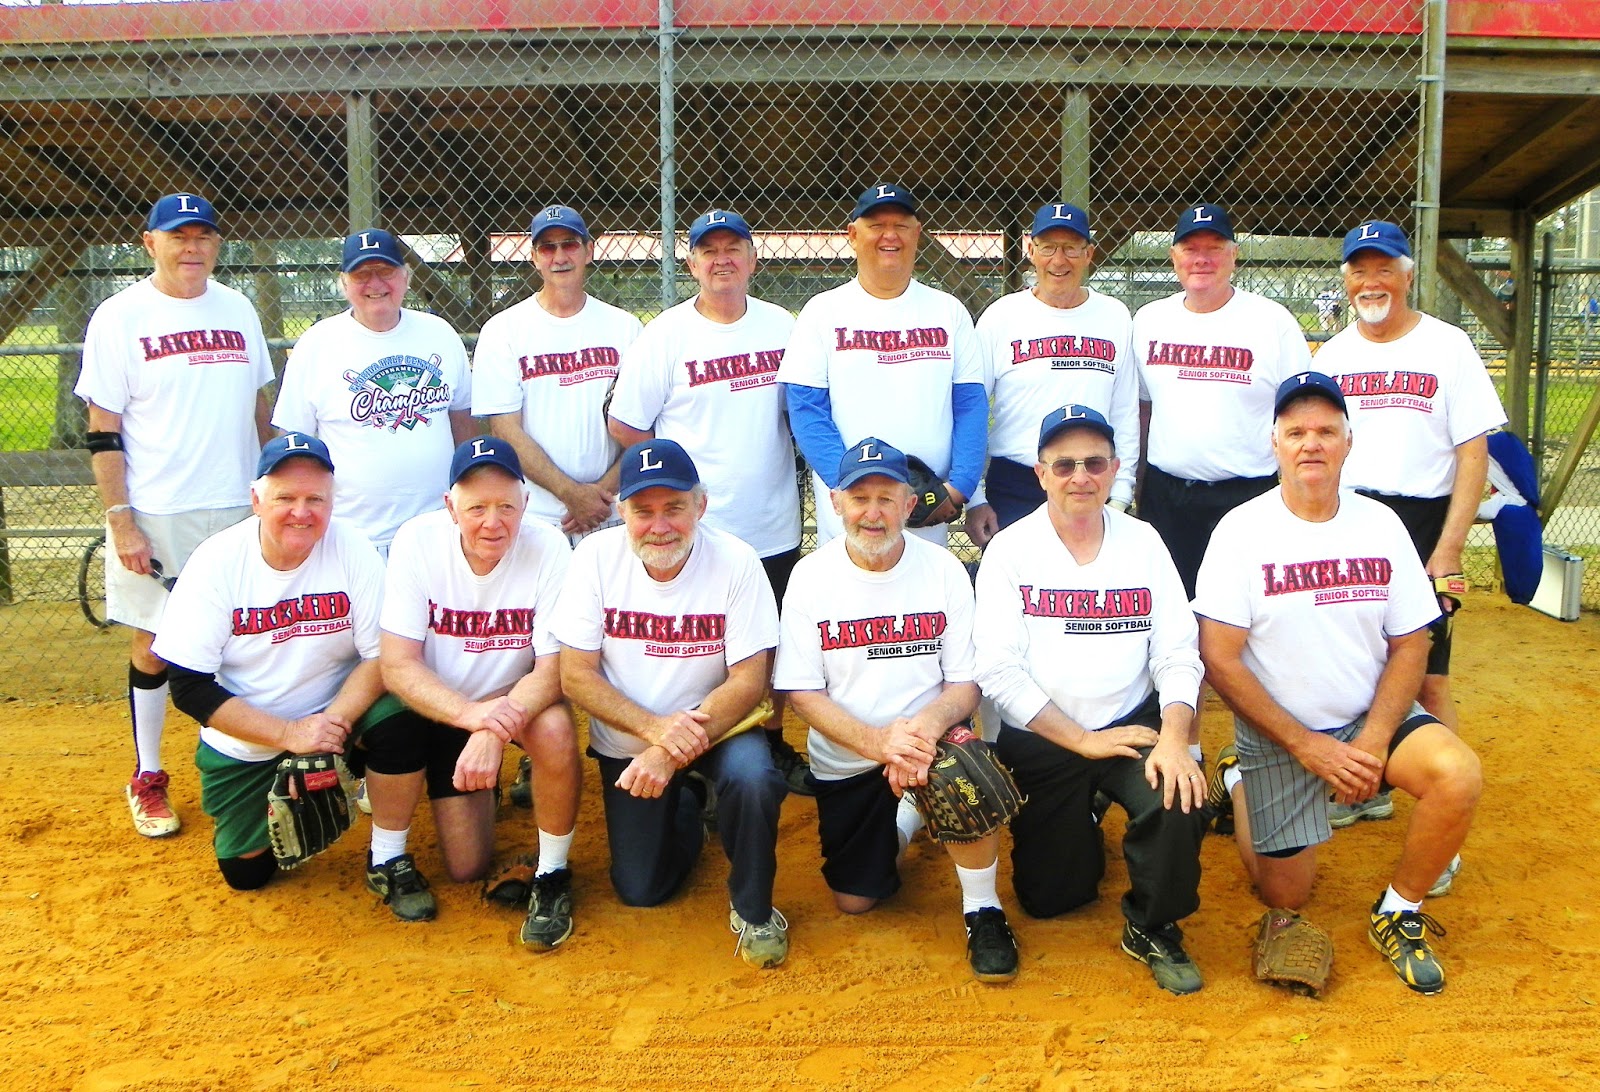 Lakeland Softball League